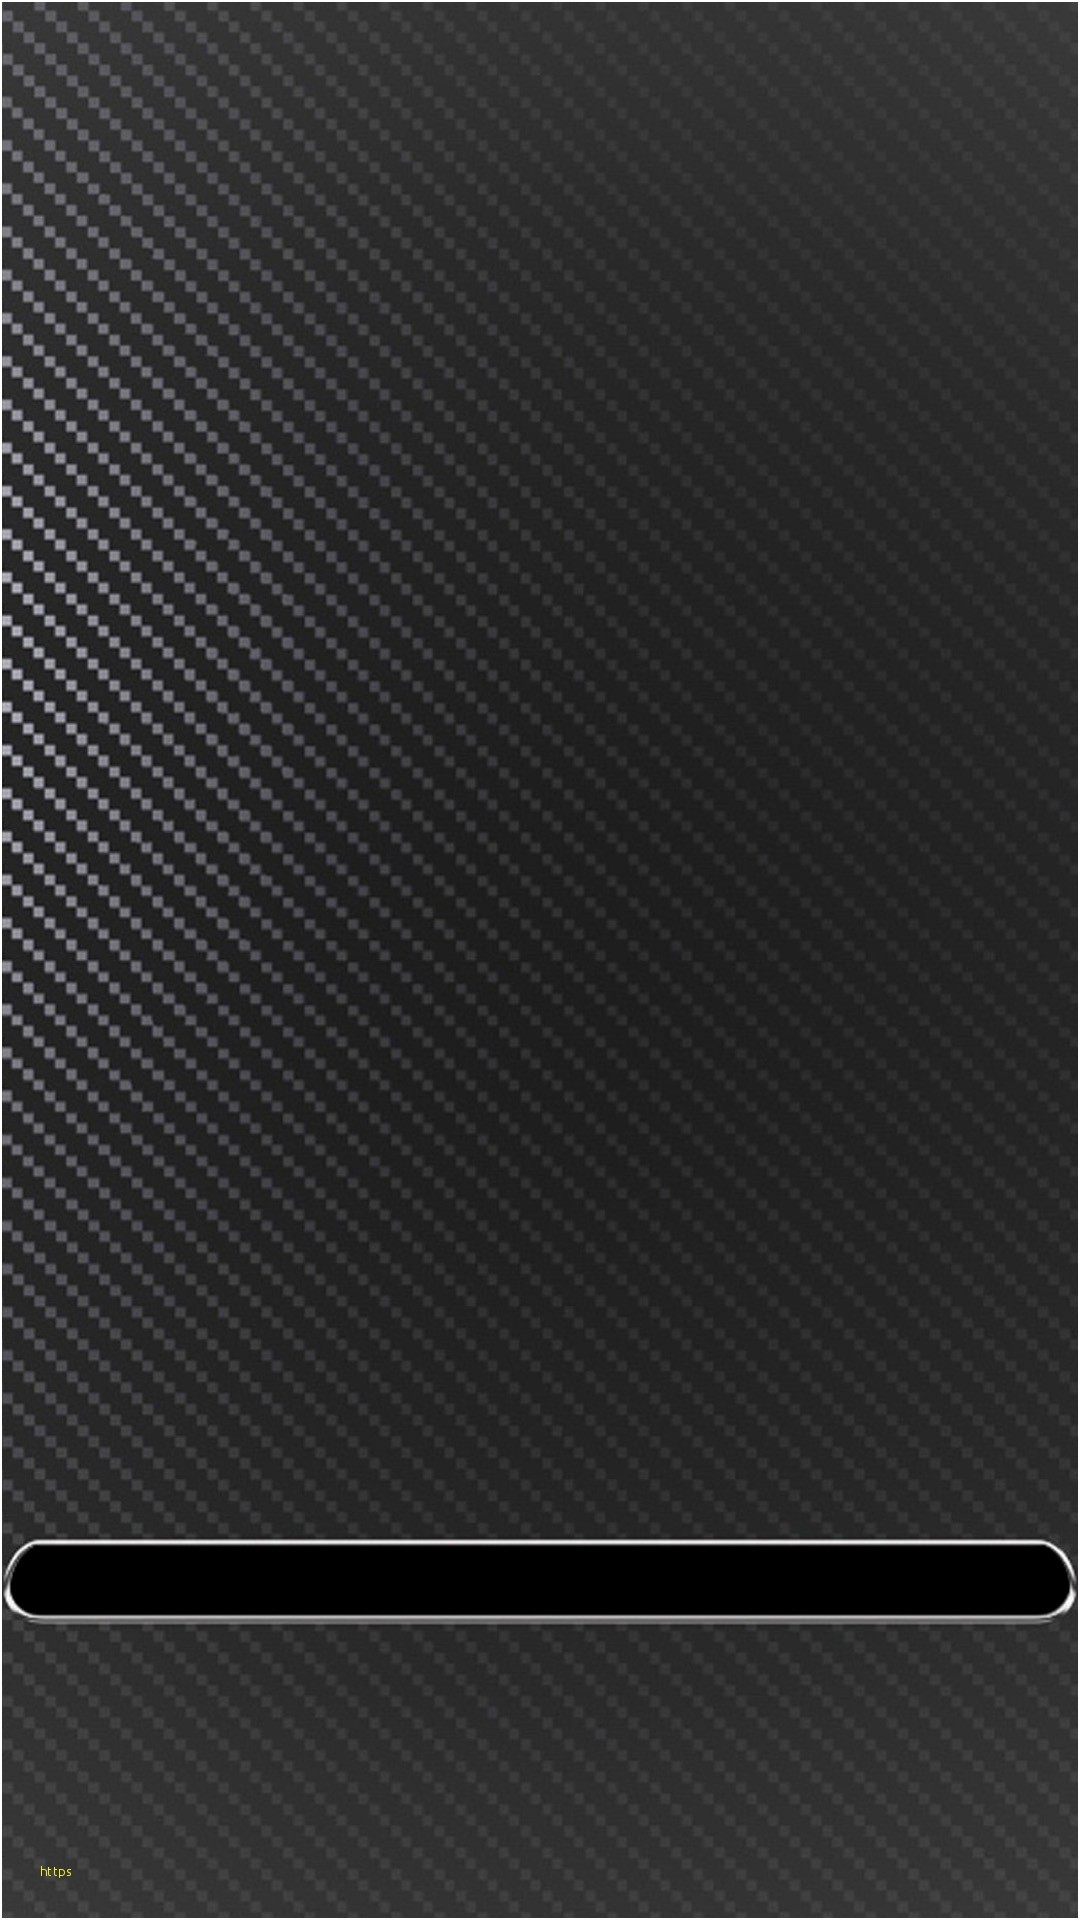 1080x1920 Carbon Fiber Wallpaper Fresh Carbon Fiber sony Xperia Z2 Wallpapers